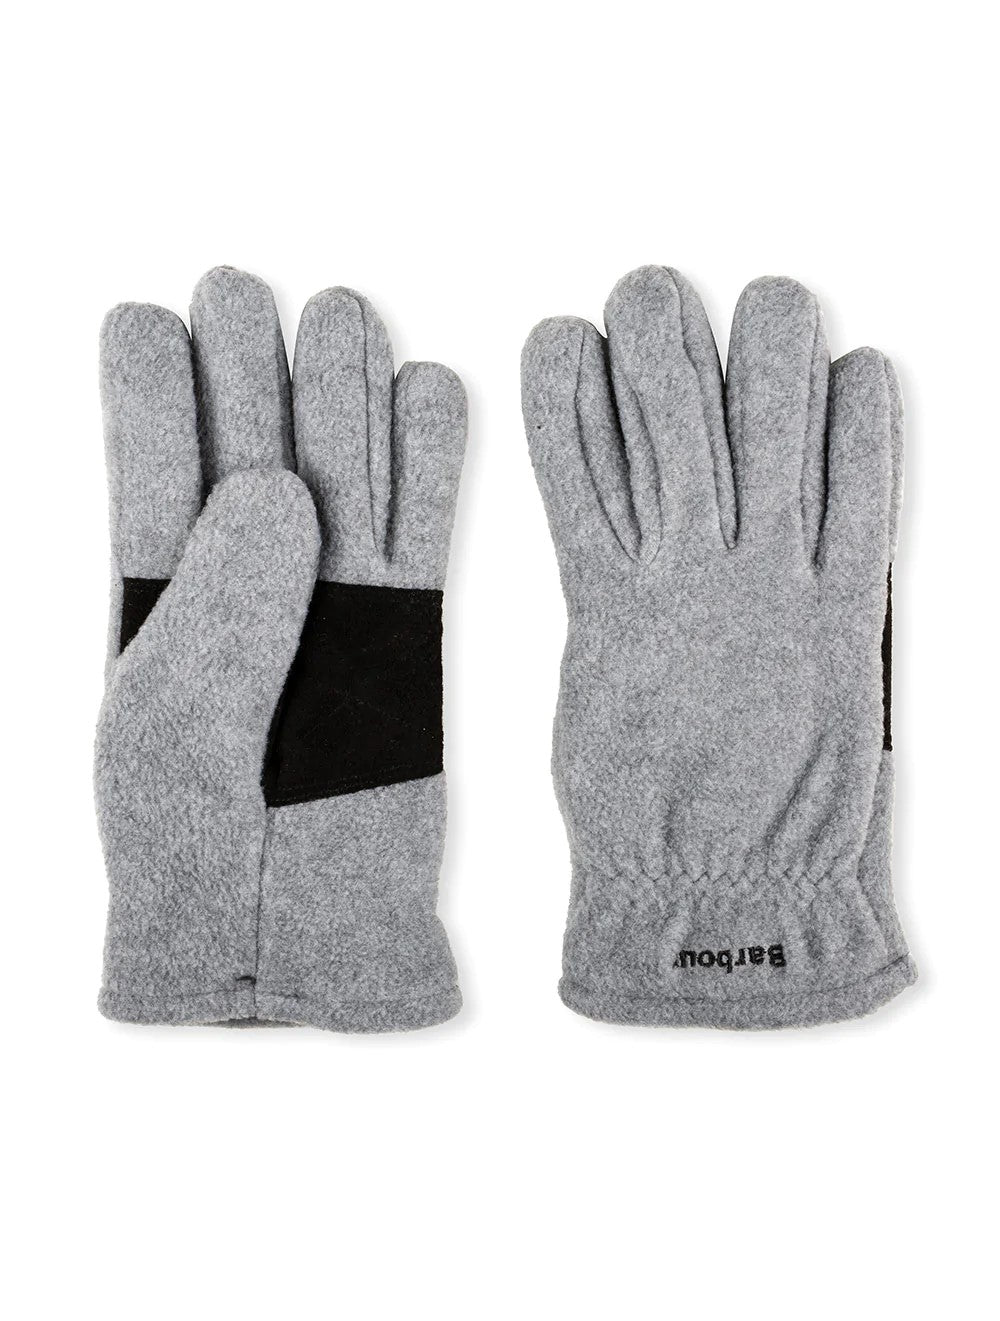 Barbour - Coalford Fleece Gloves, Grey